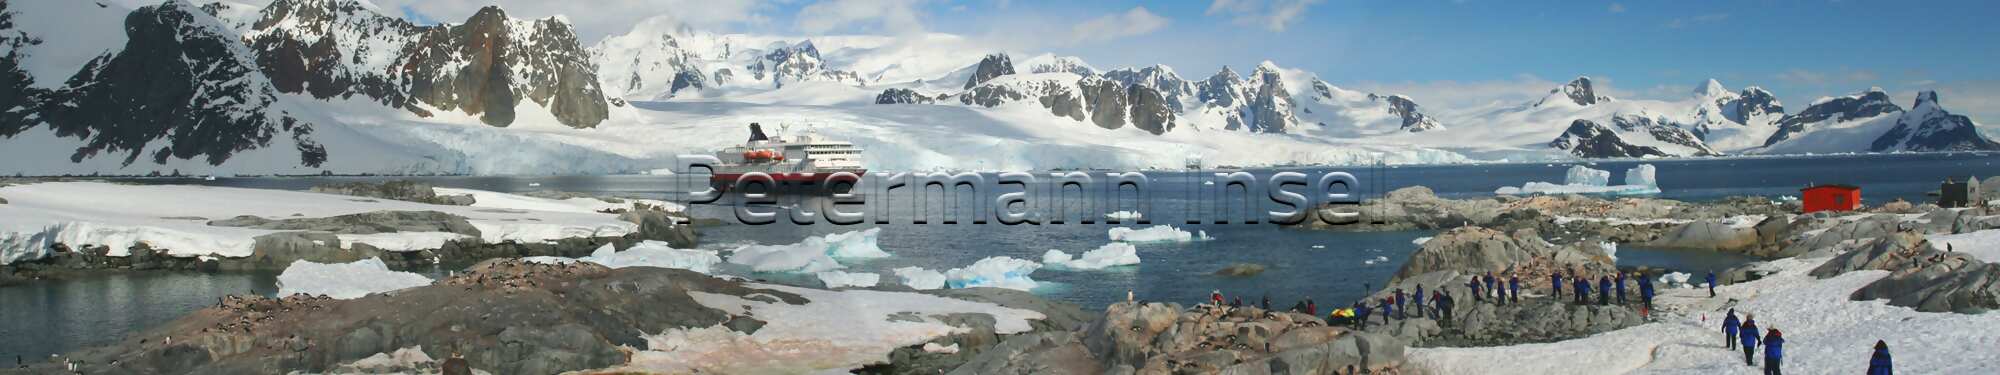 Panorama - Pinguinkolonien, Kreuzfahrtschiff & Touristen, Petermann-Insel (Vordergrund), Kiew-Halbinsel der Antarktischen Halbinsel